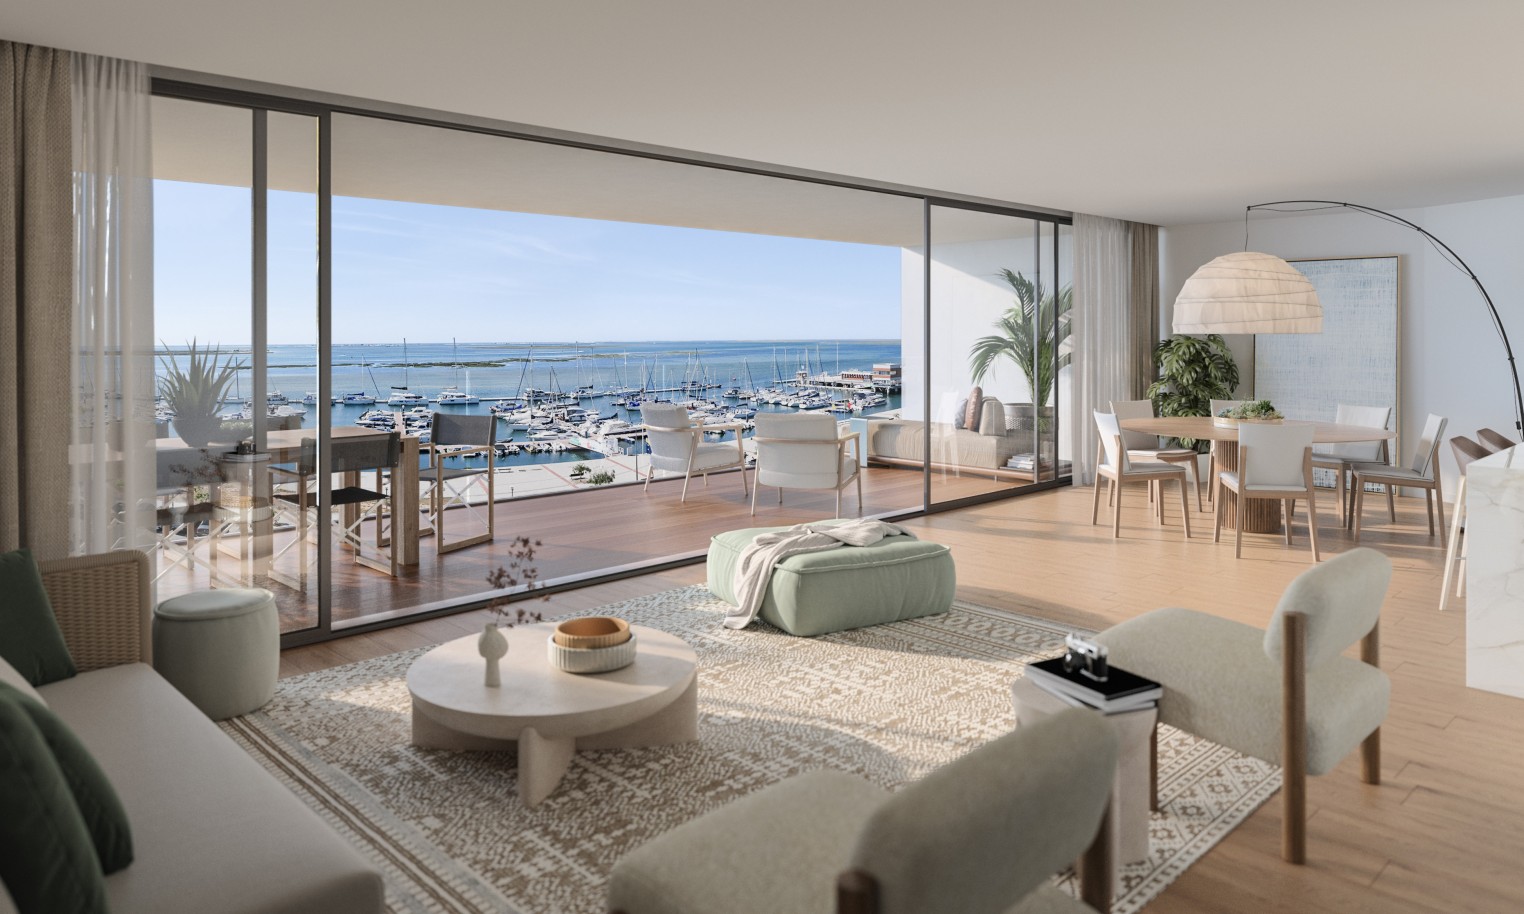 Pisos nuevos con vistas al mar, 1, 2 y 3 dormitorios, en venta en Olhão, Algarve_244517